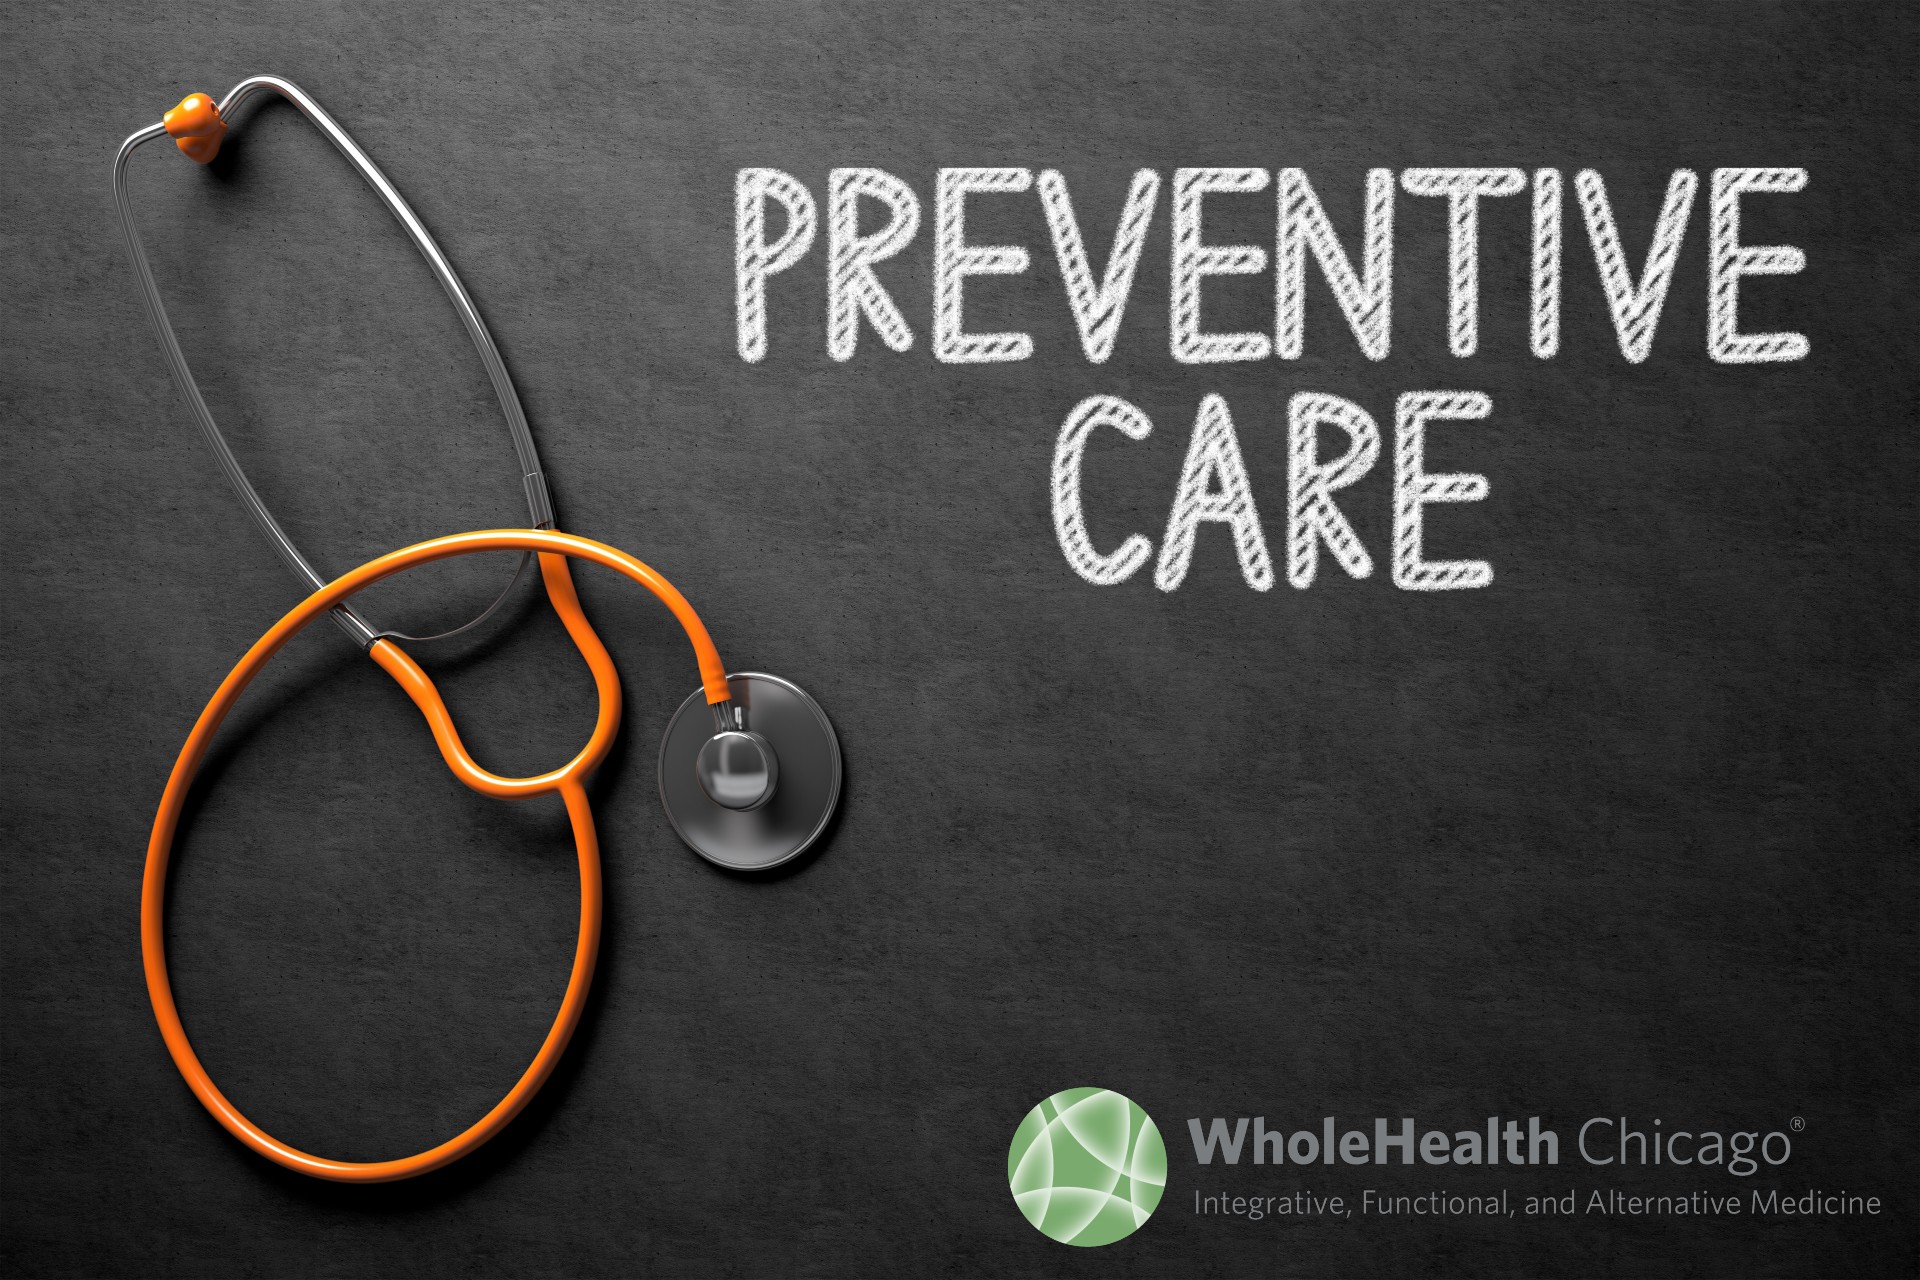 Preventive care